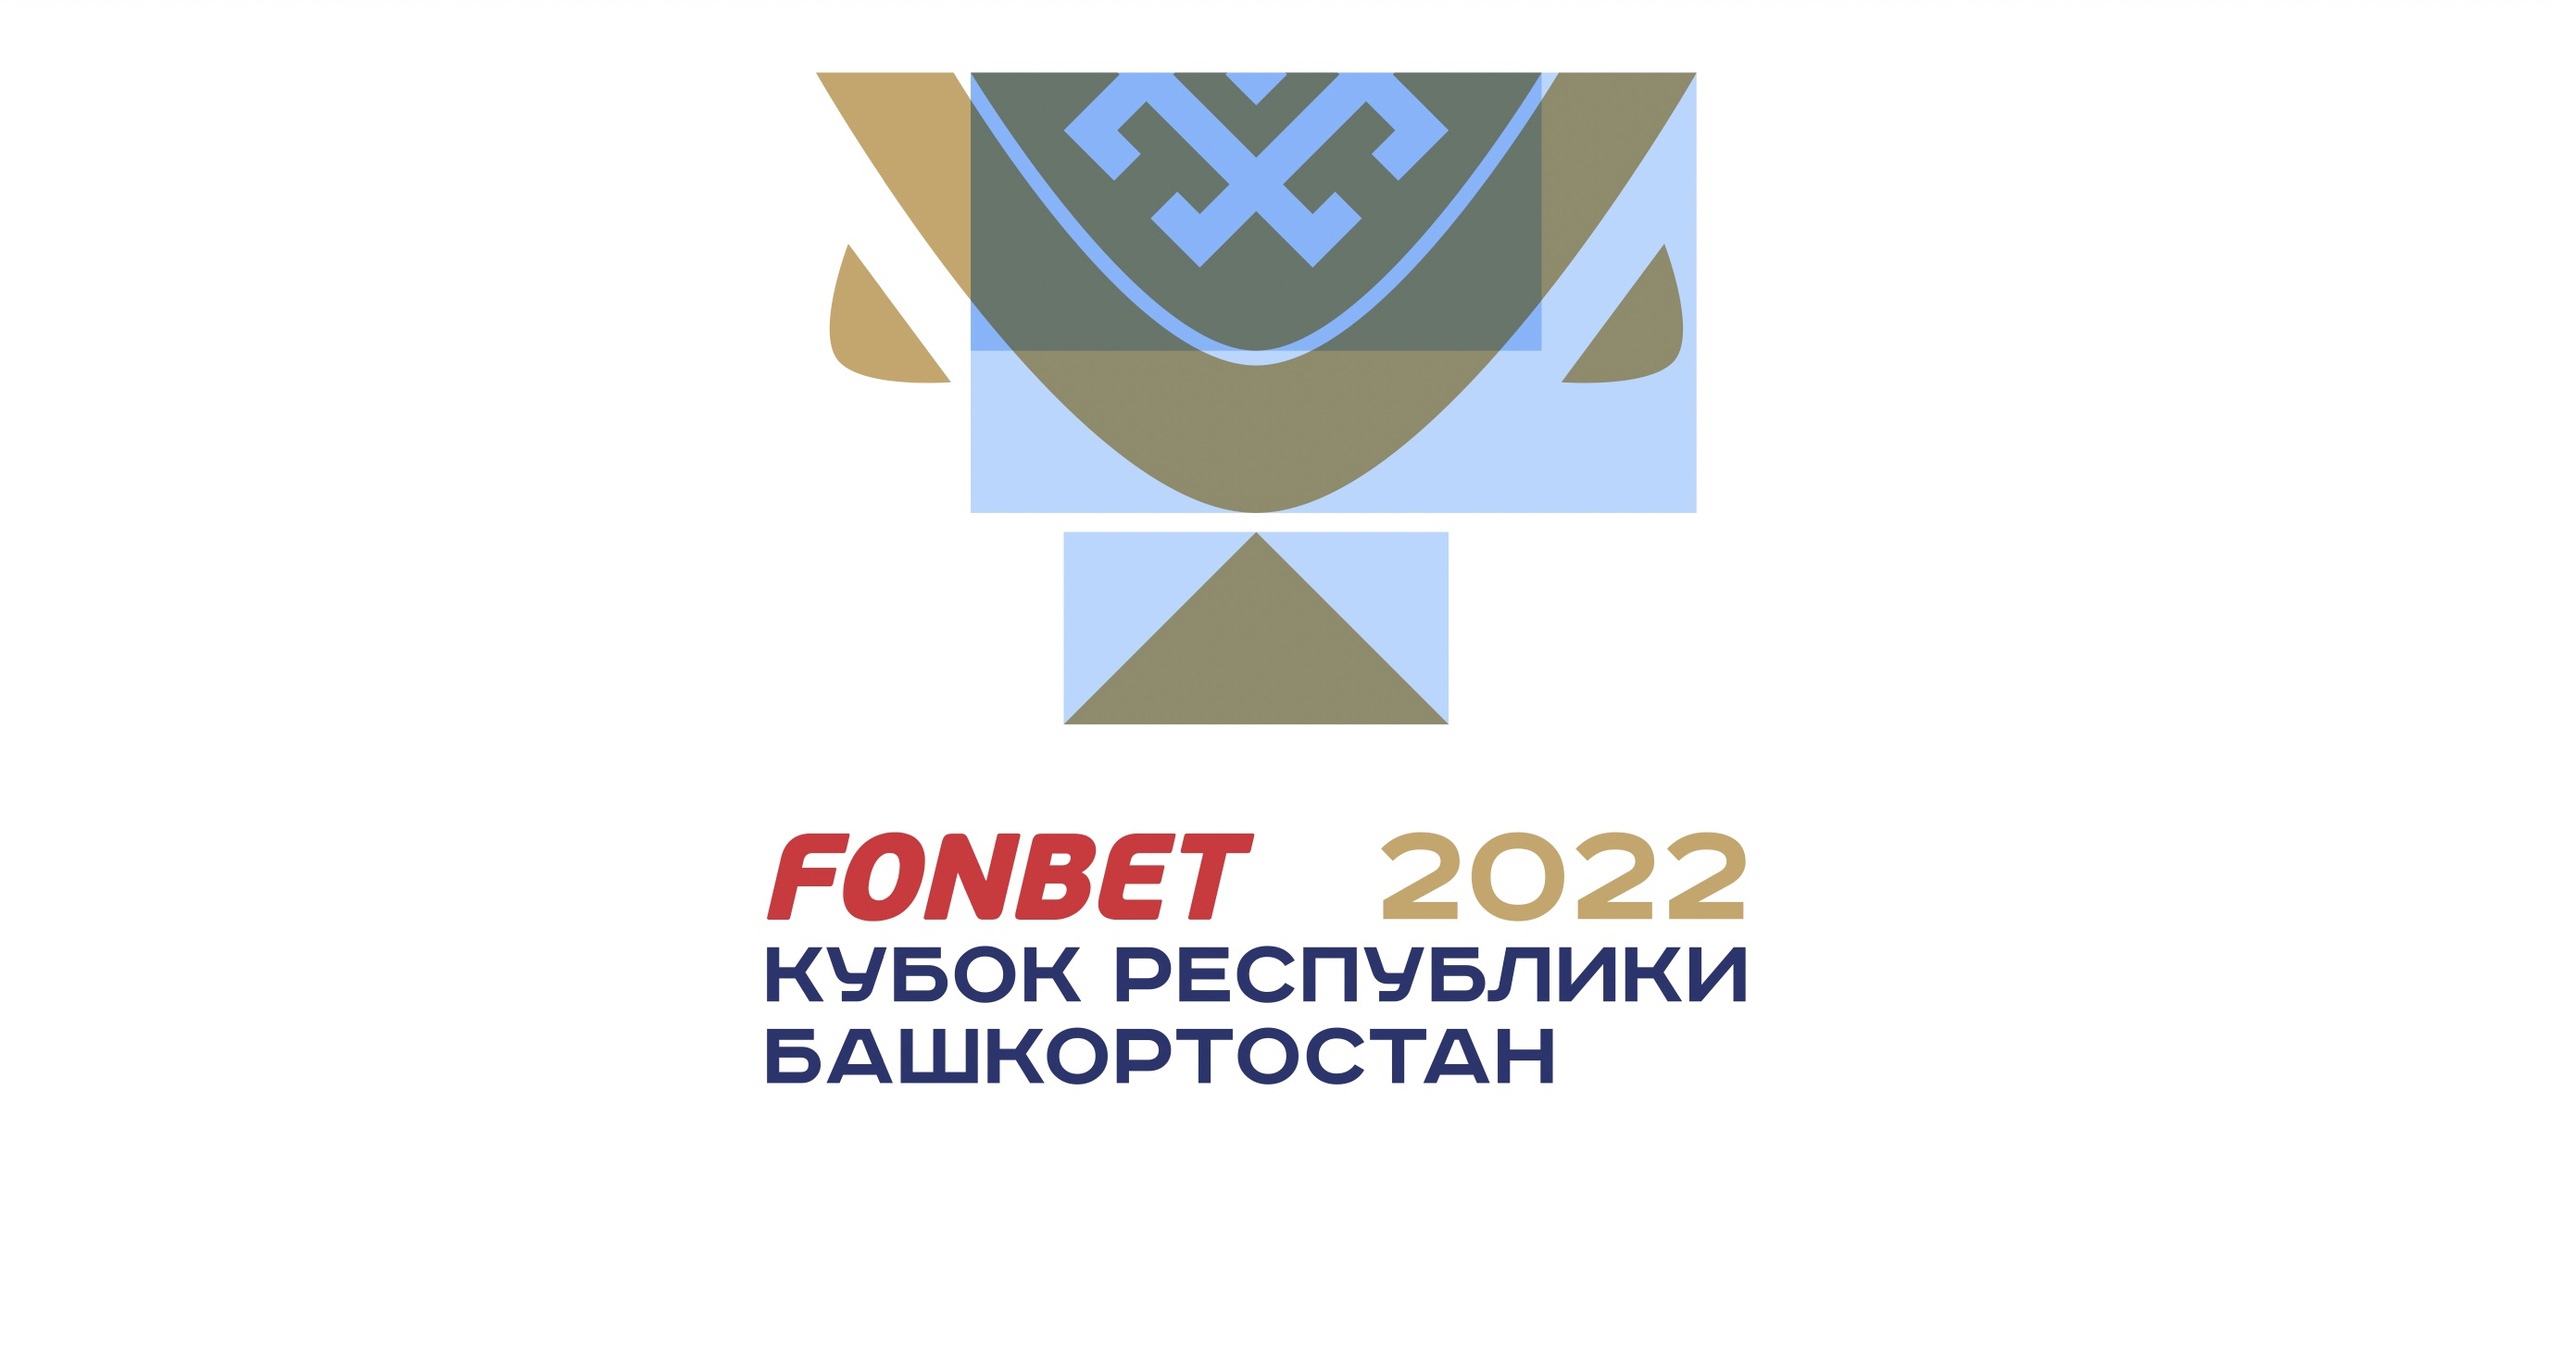 Фонбет стал титульным партнером Кубка Республики Башкортостан